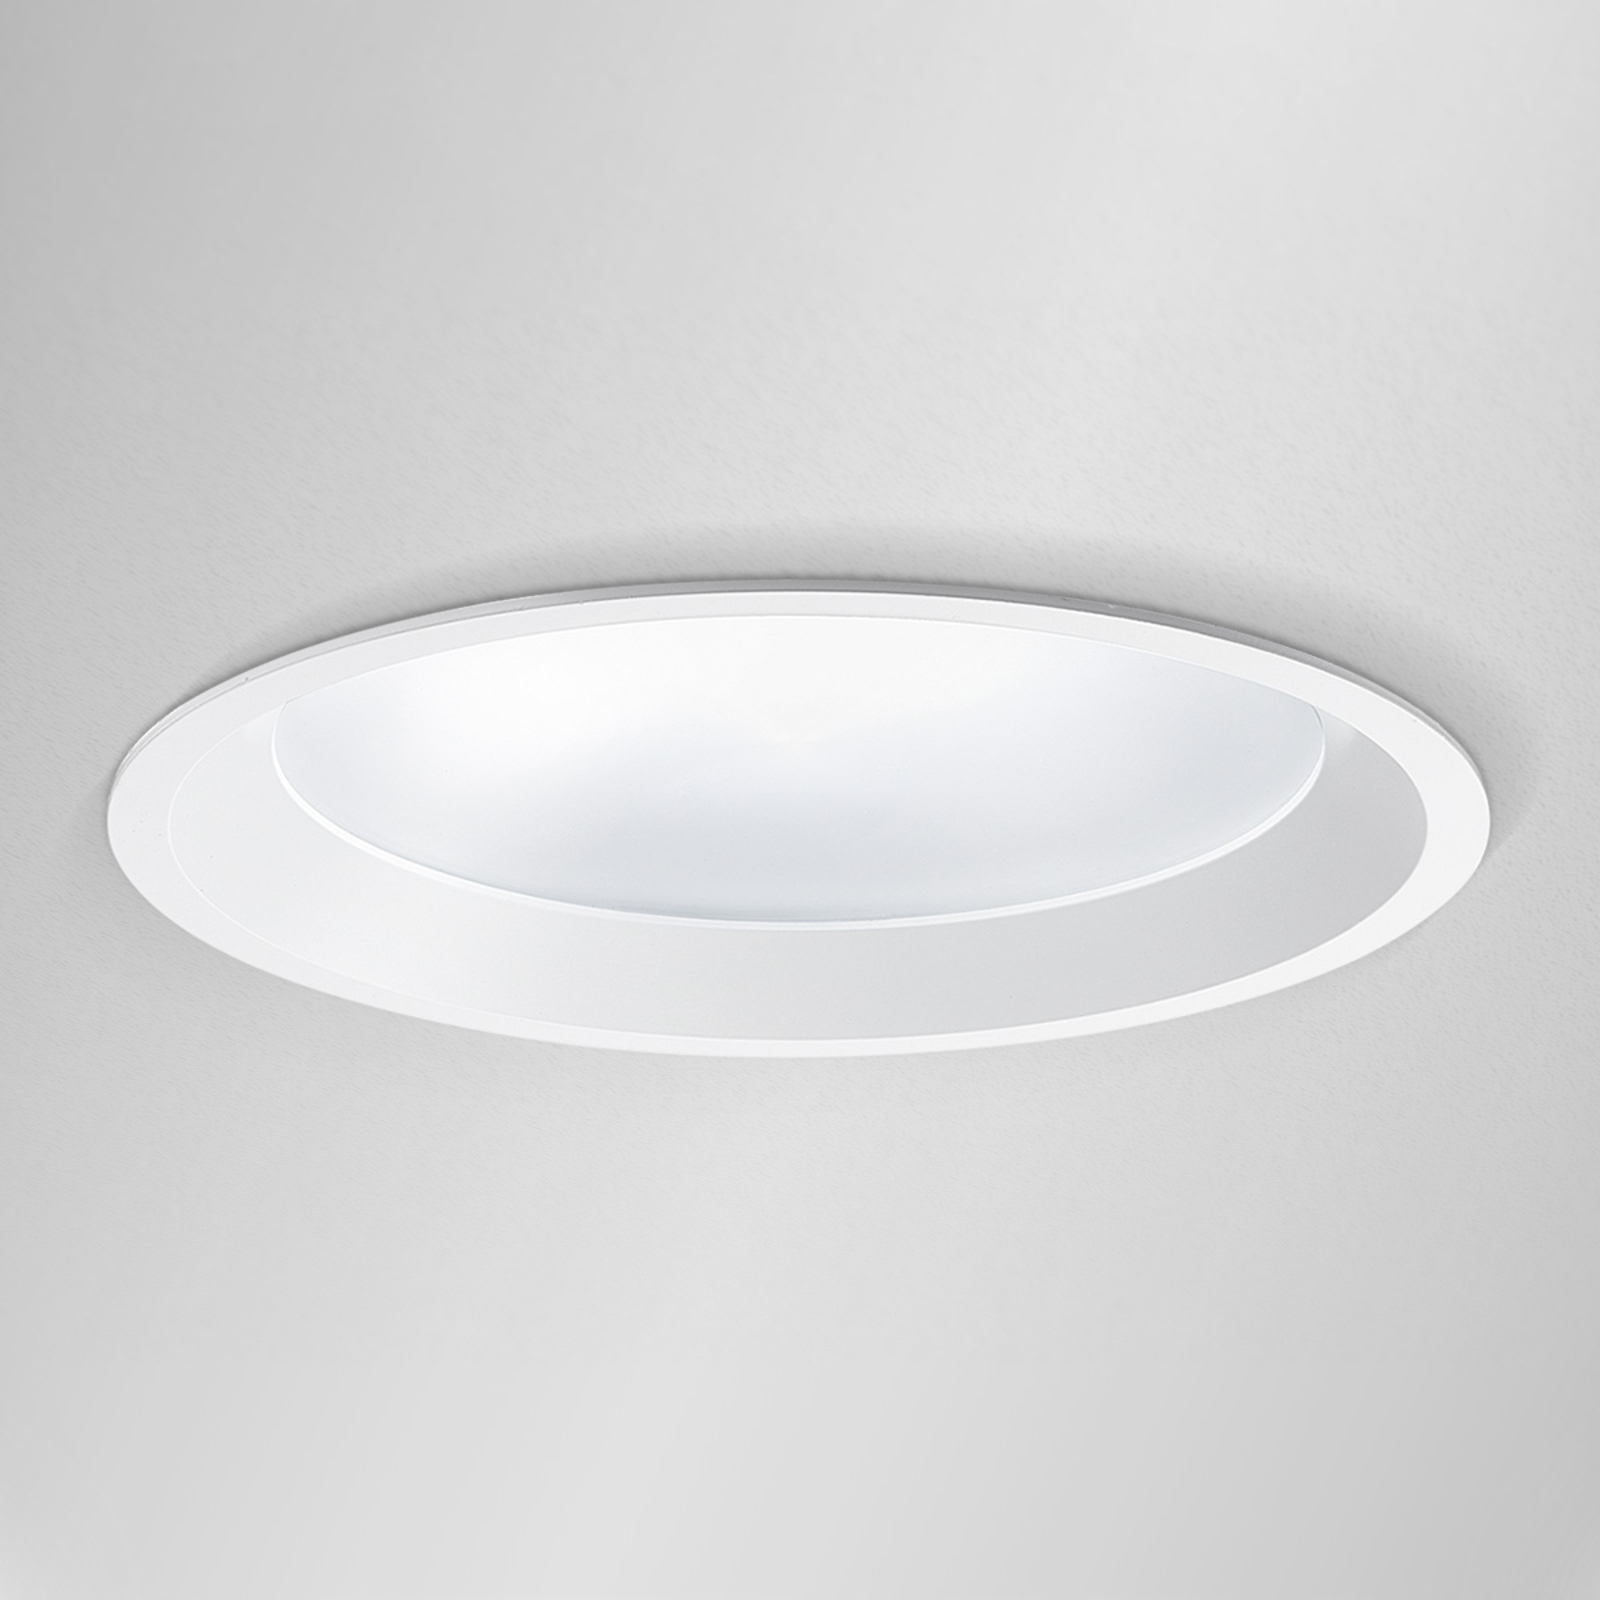 Strato 190 innfelt LED-taklampe – diameter 19 cm